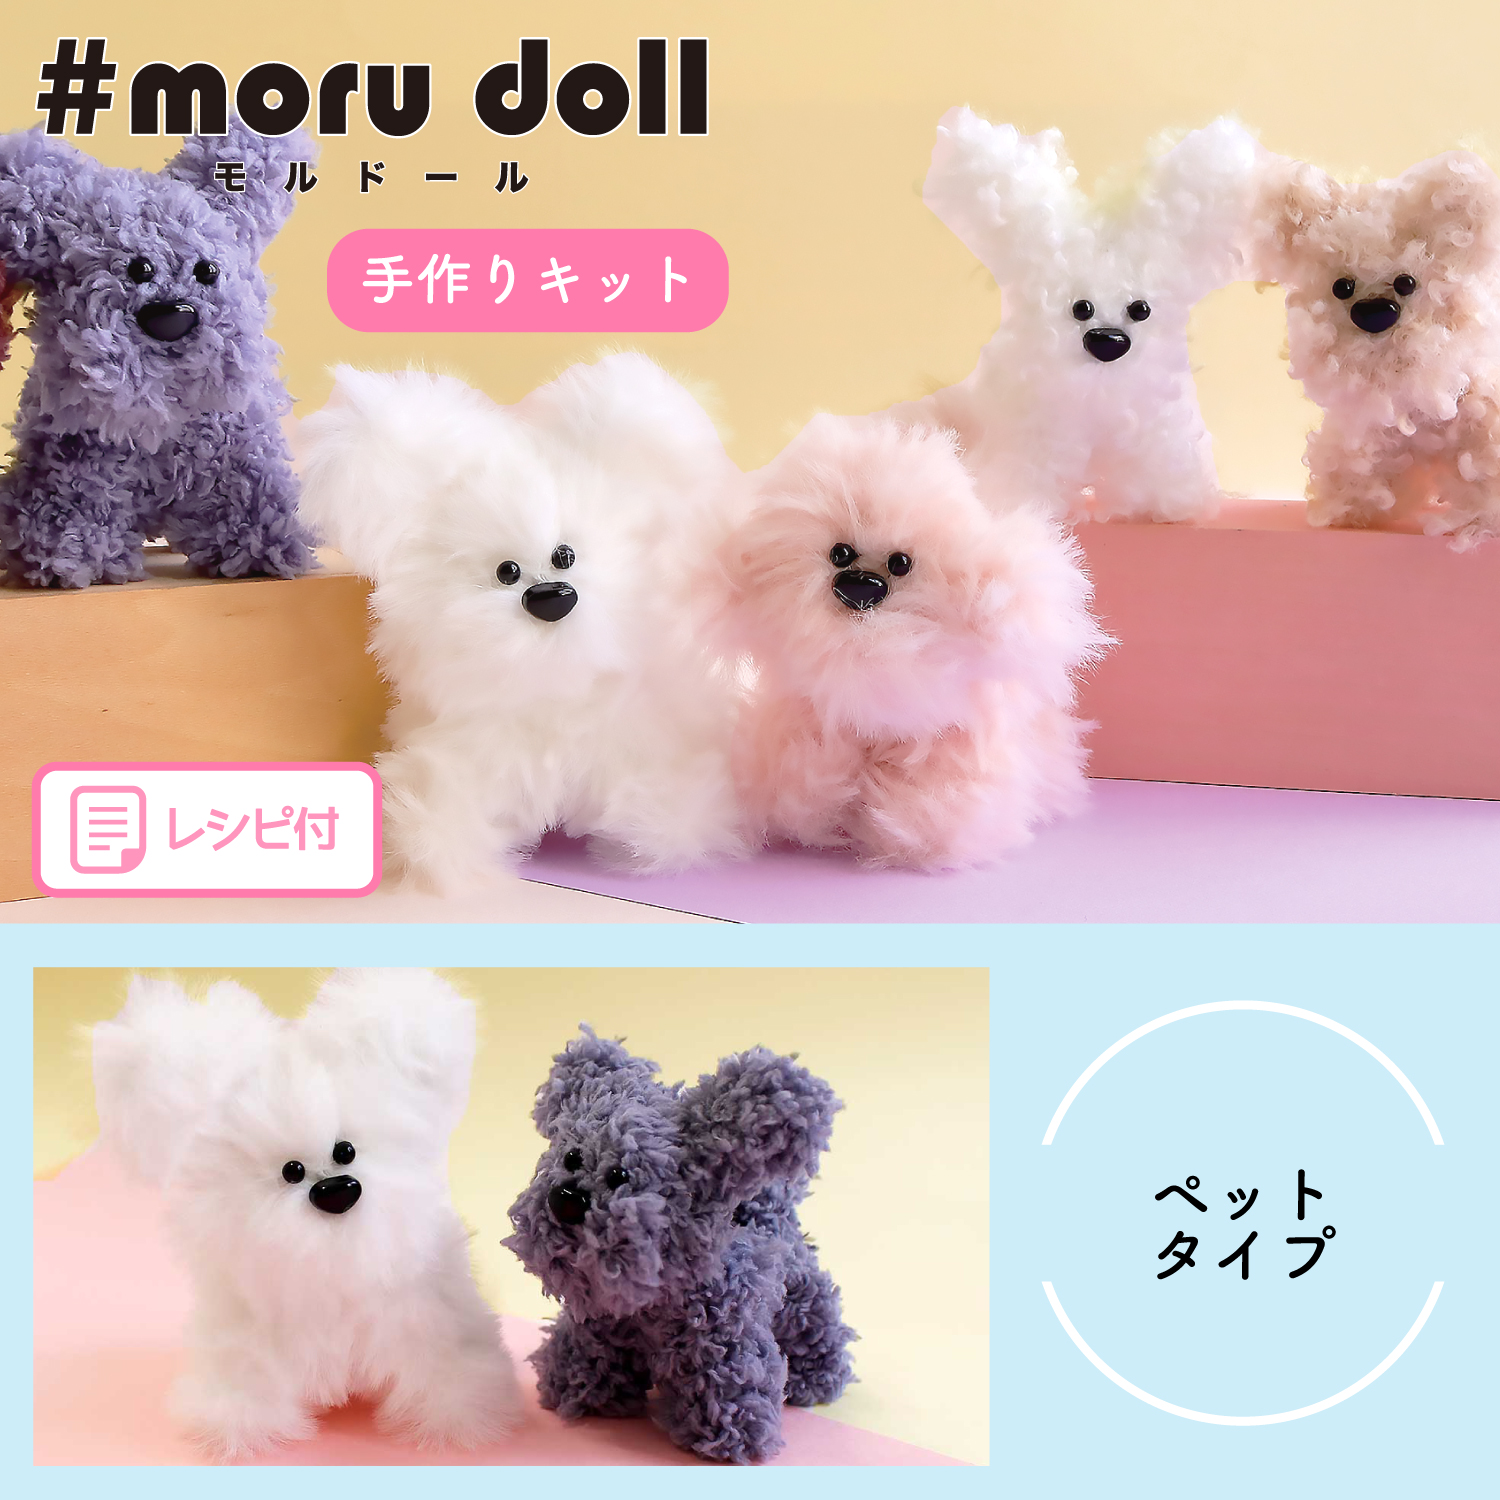 MOL-KIT モール人形 モールドール キット ペットタイプ (袋)